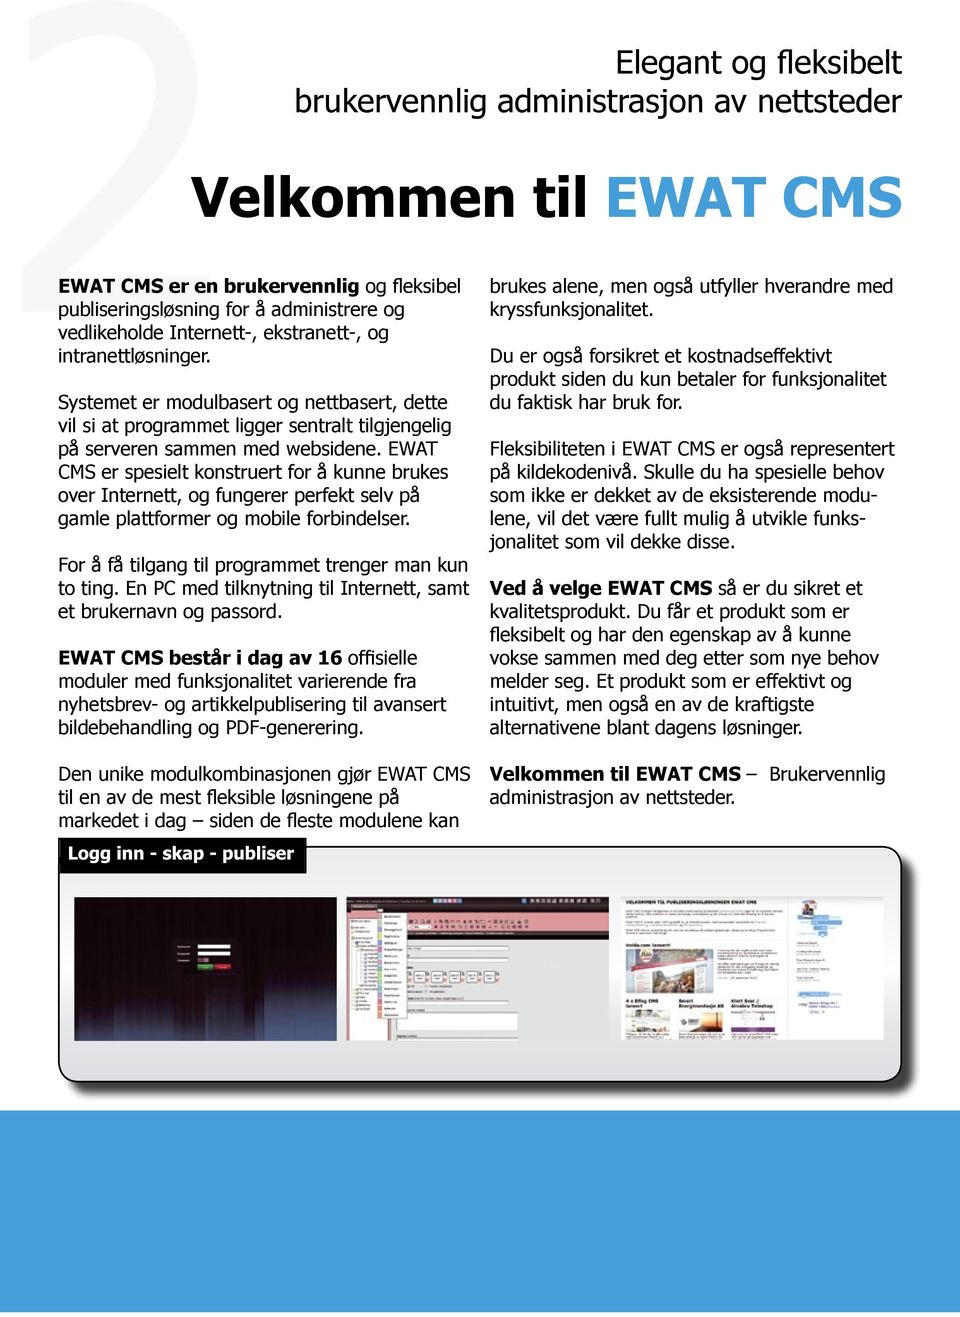 EWAT CMS er spesielt konstruert for å kunne brukes over Internett, og fungerer perfekt selv på gamle plattformer og mobile forbindelser. For å få tilgang til programmet trenger man kun to ting.